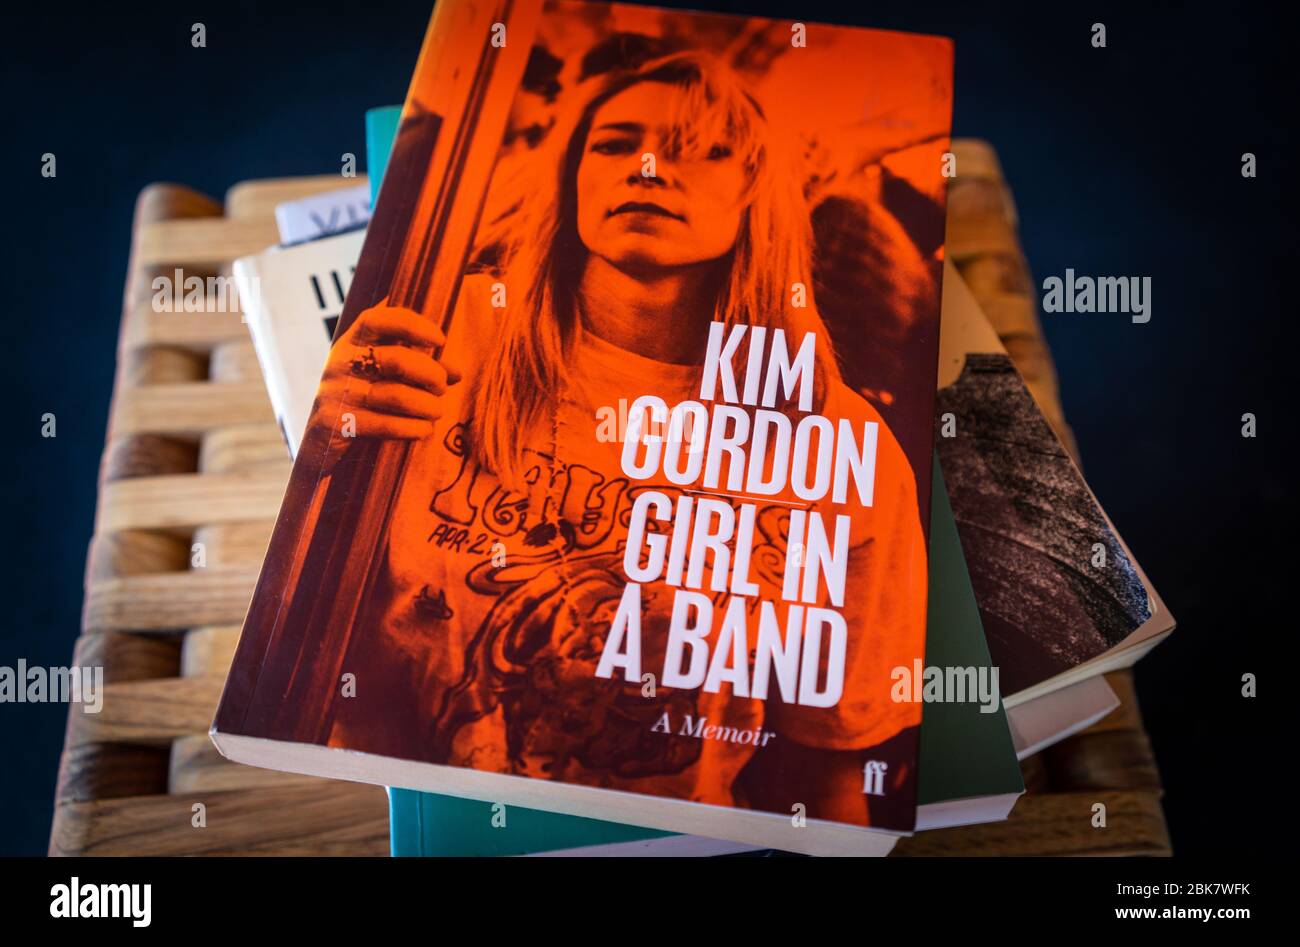 Un exemplaire de "Girl in a Band" un mémoire de Kim Gordon sur une pile de livres Banque D'Images